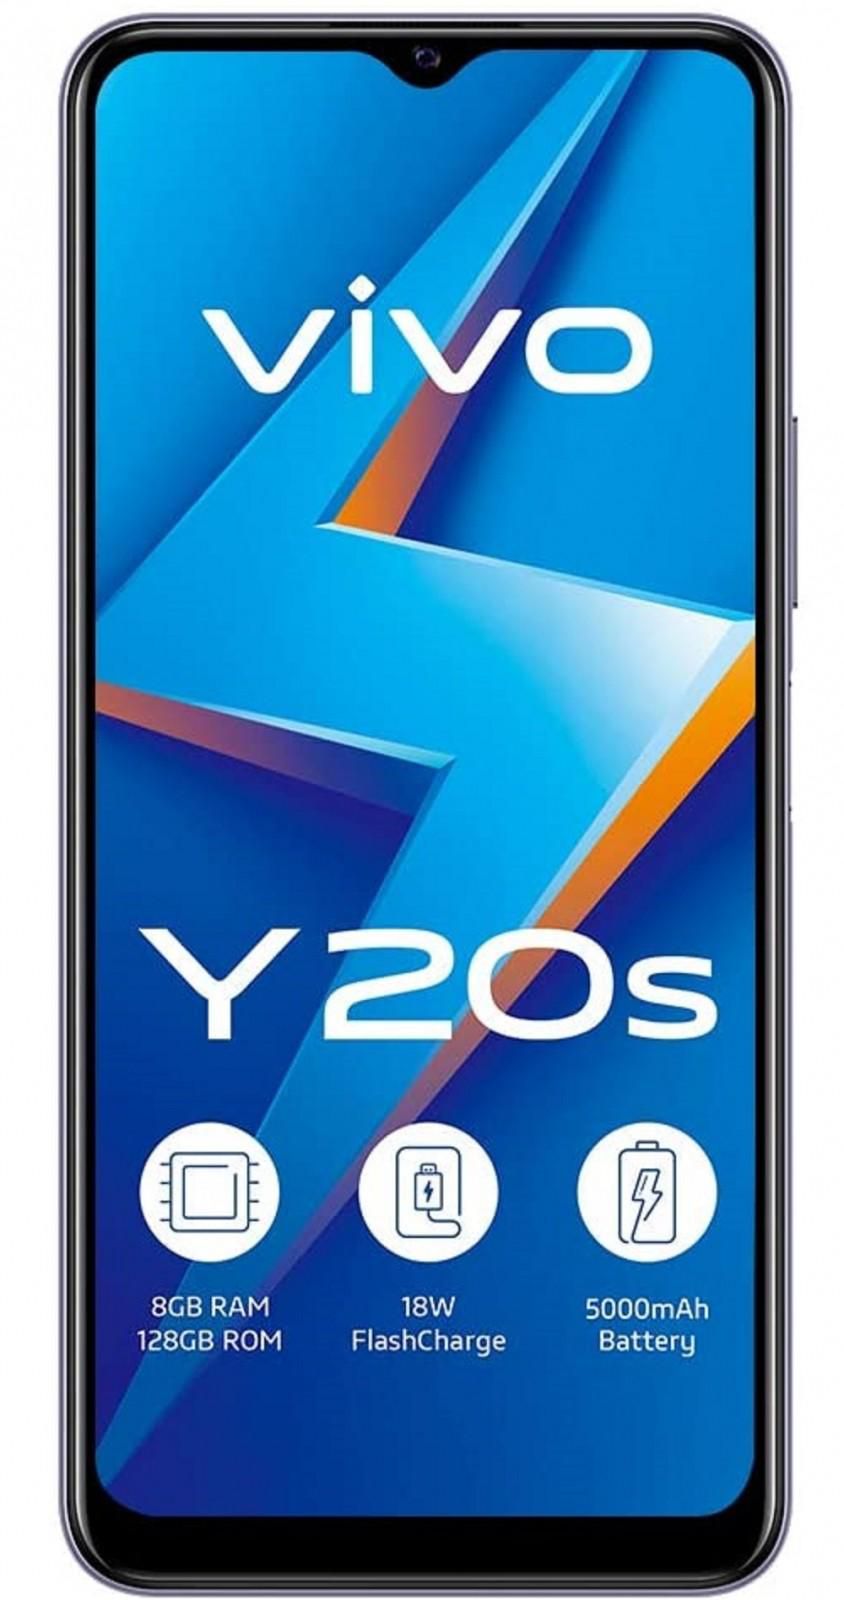 Vivo Y20s Dual SIM Mobile Phone, 8 GB RAM 128GB 4G LTE - Dawn White